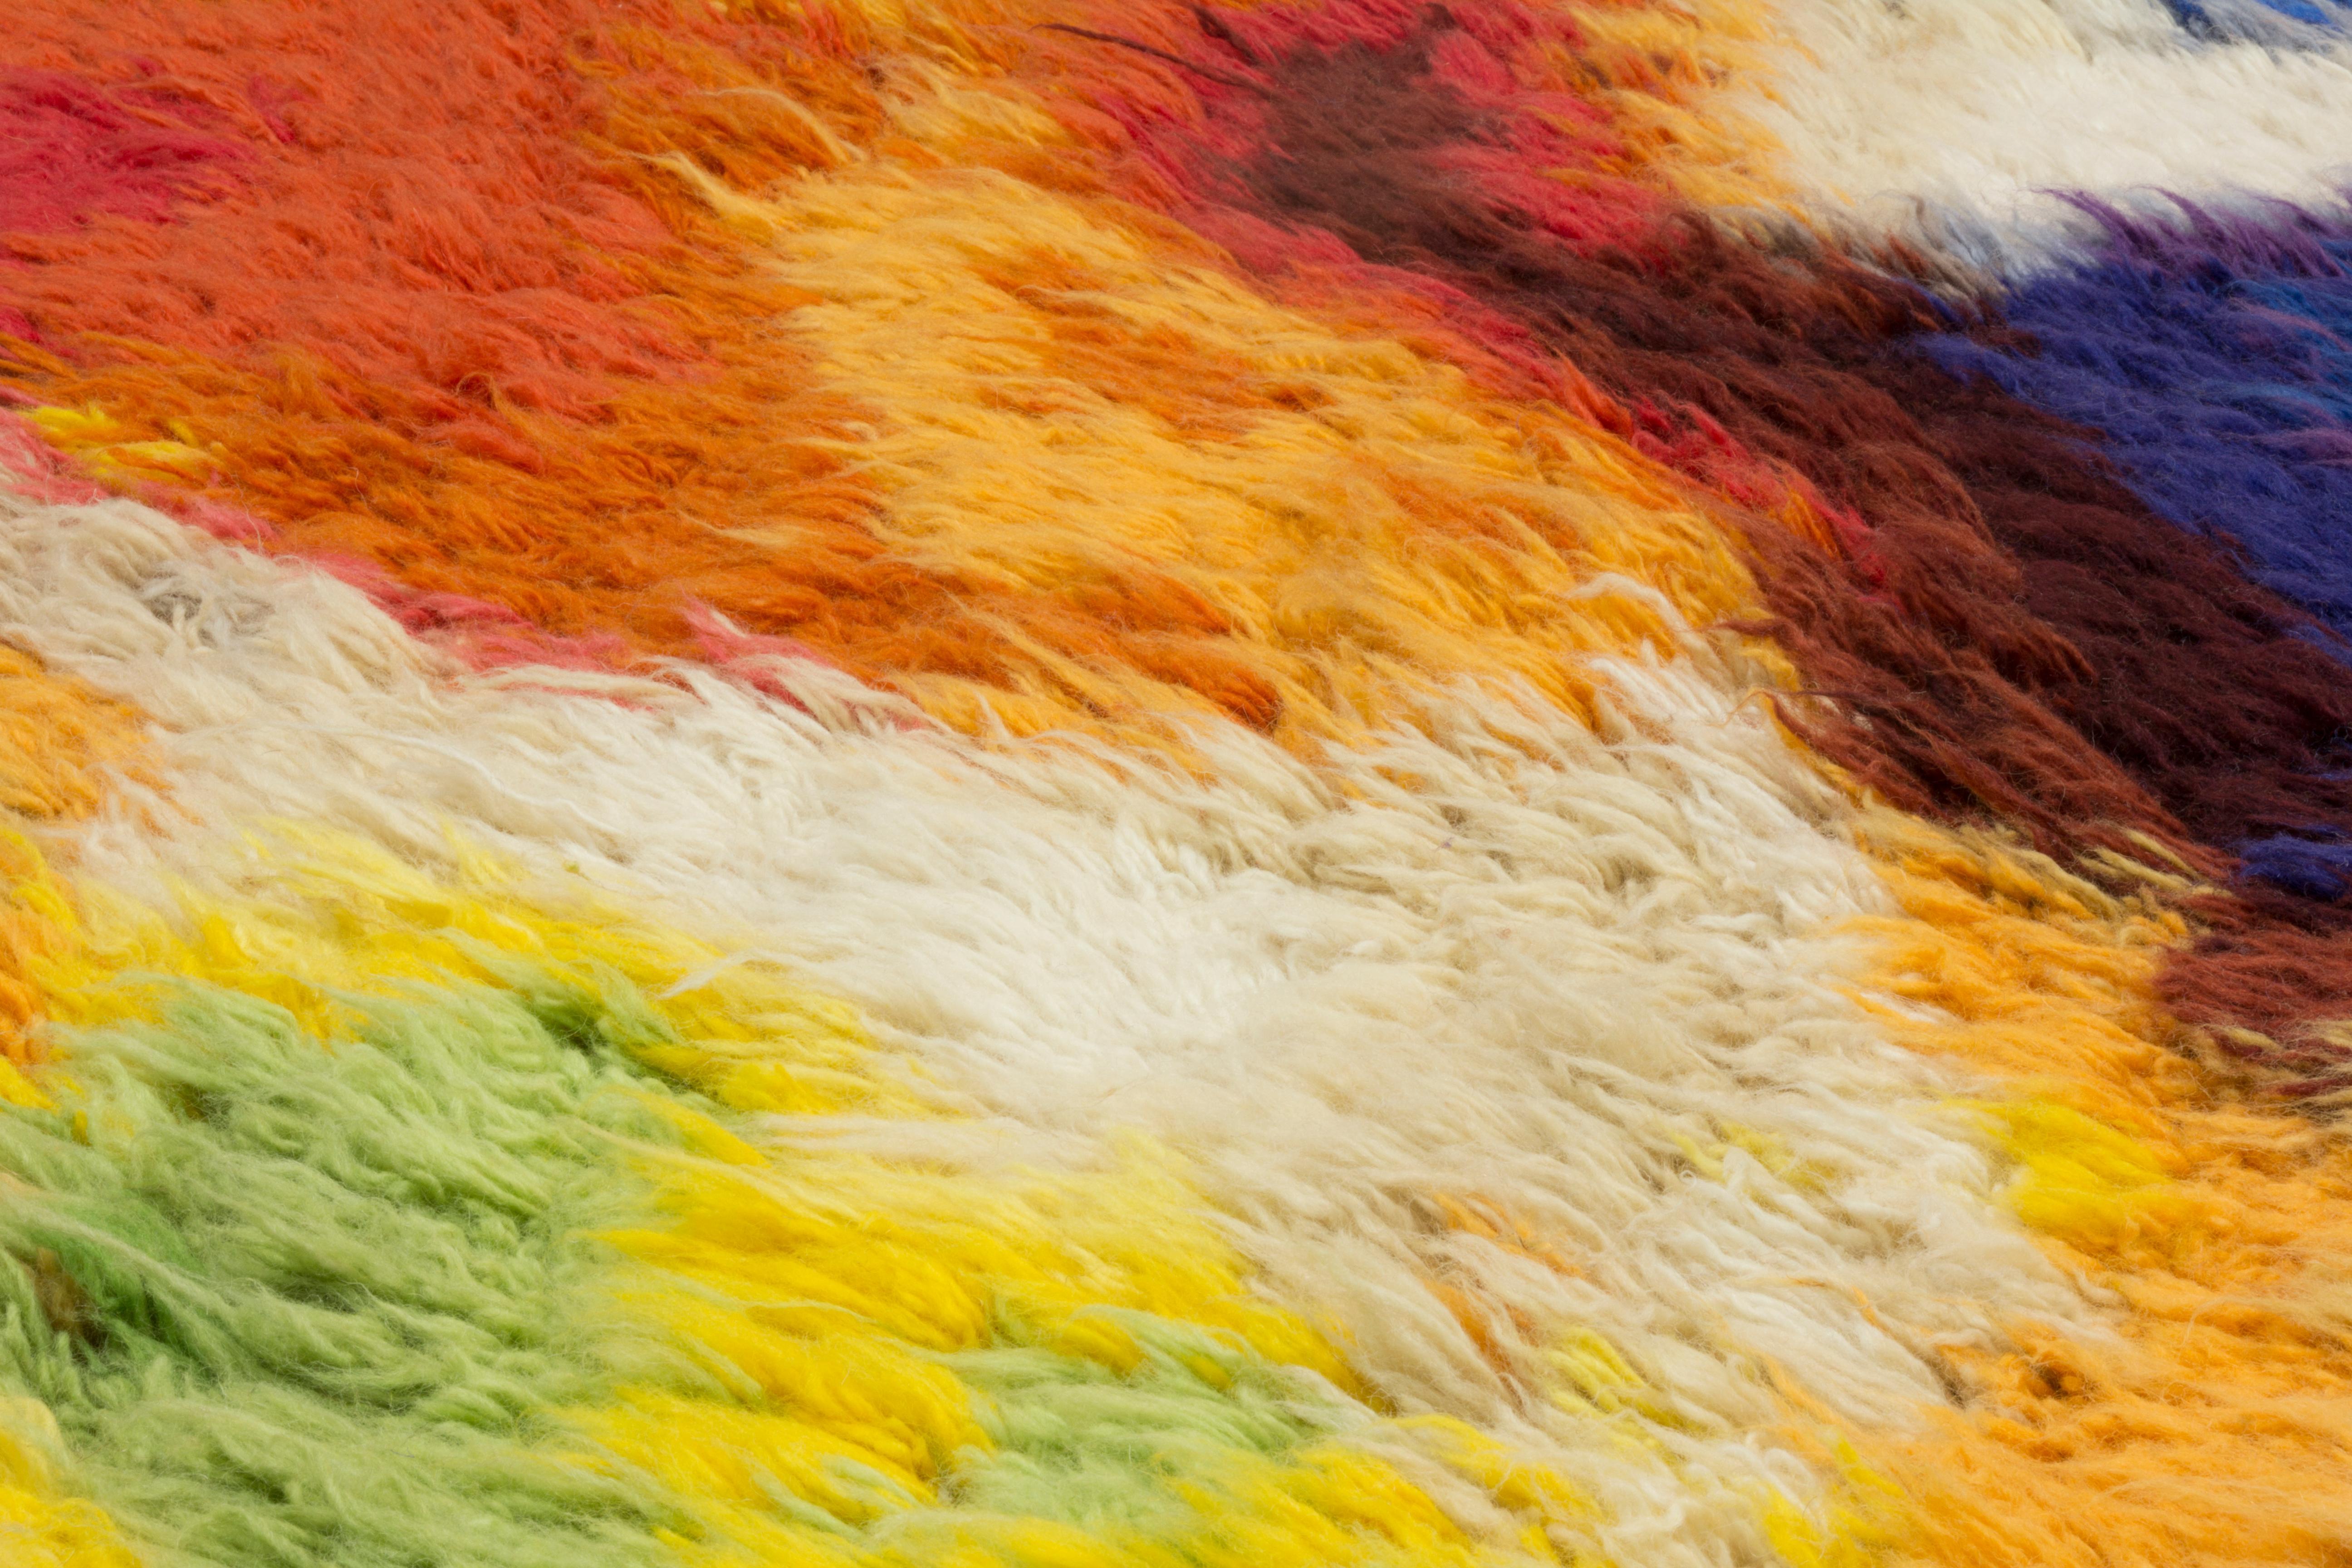 Handgeknüpft im cc-tapis-Atelier in Kathmandu, Nepal. Der Teppich wird aus einem Baumwollgewebe, Himalaya-Wolle, Seide und Metallfasern aus der Umgebung des Ateliers hergestellt. Hergestellt mit der marokkanischen Webtechnik. Mit dem Verkauf jedes